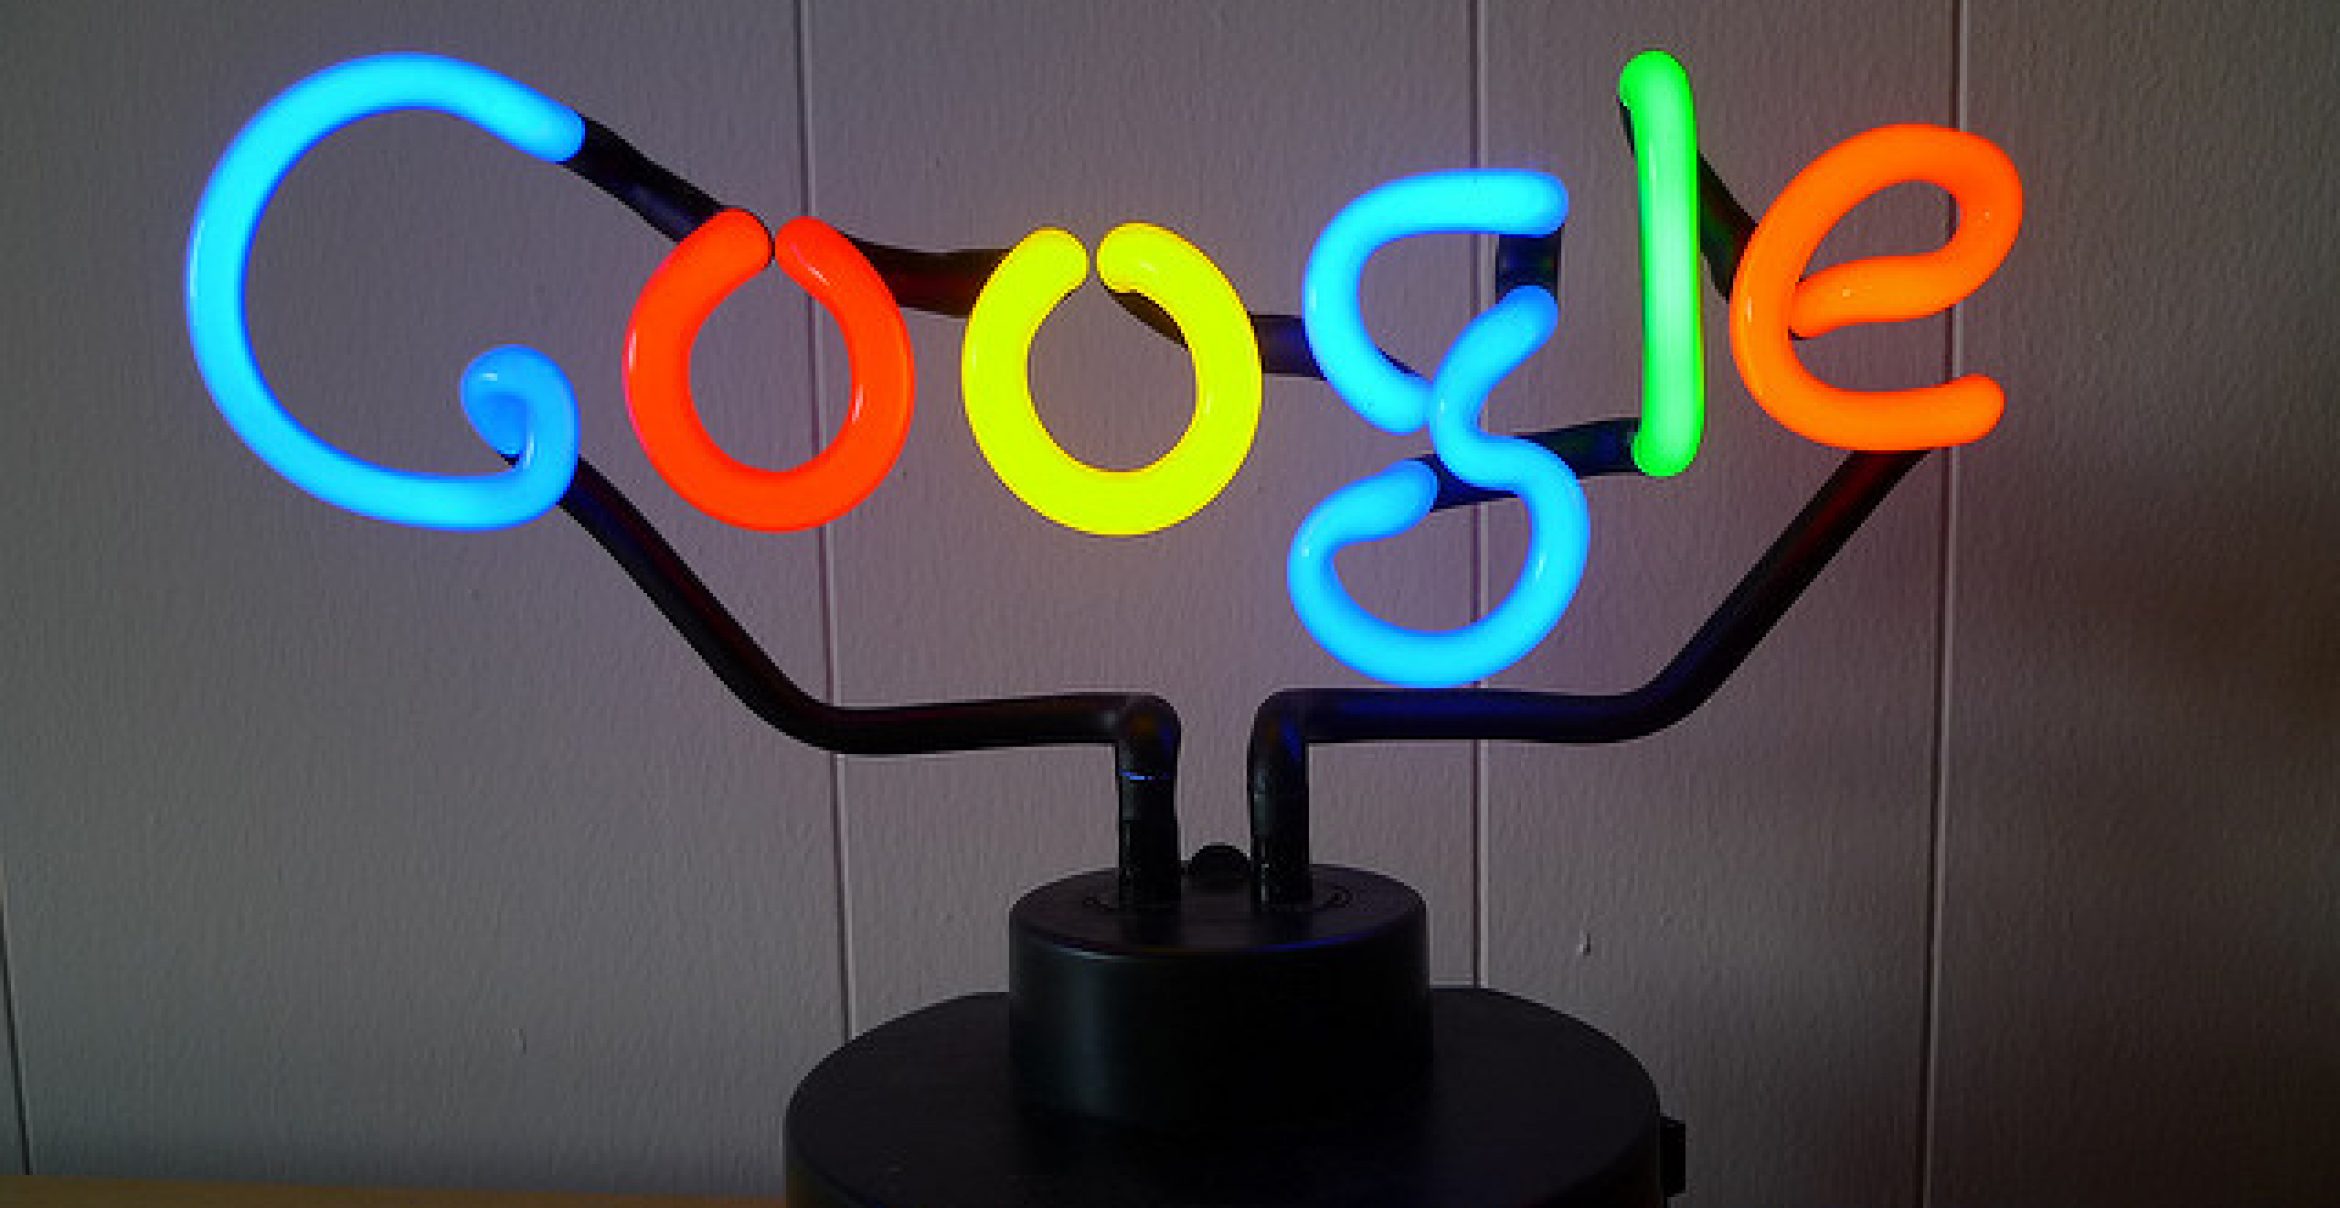 Google feiert Geburtstag: Die besten versteckten Funktionen der Suchmaschine